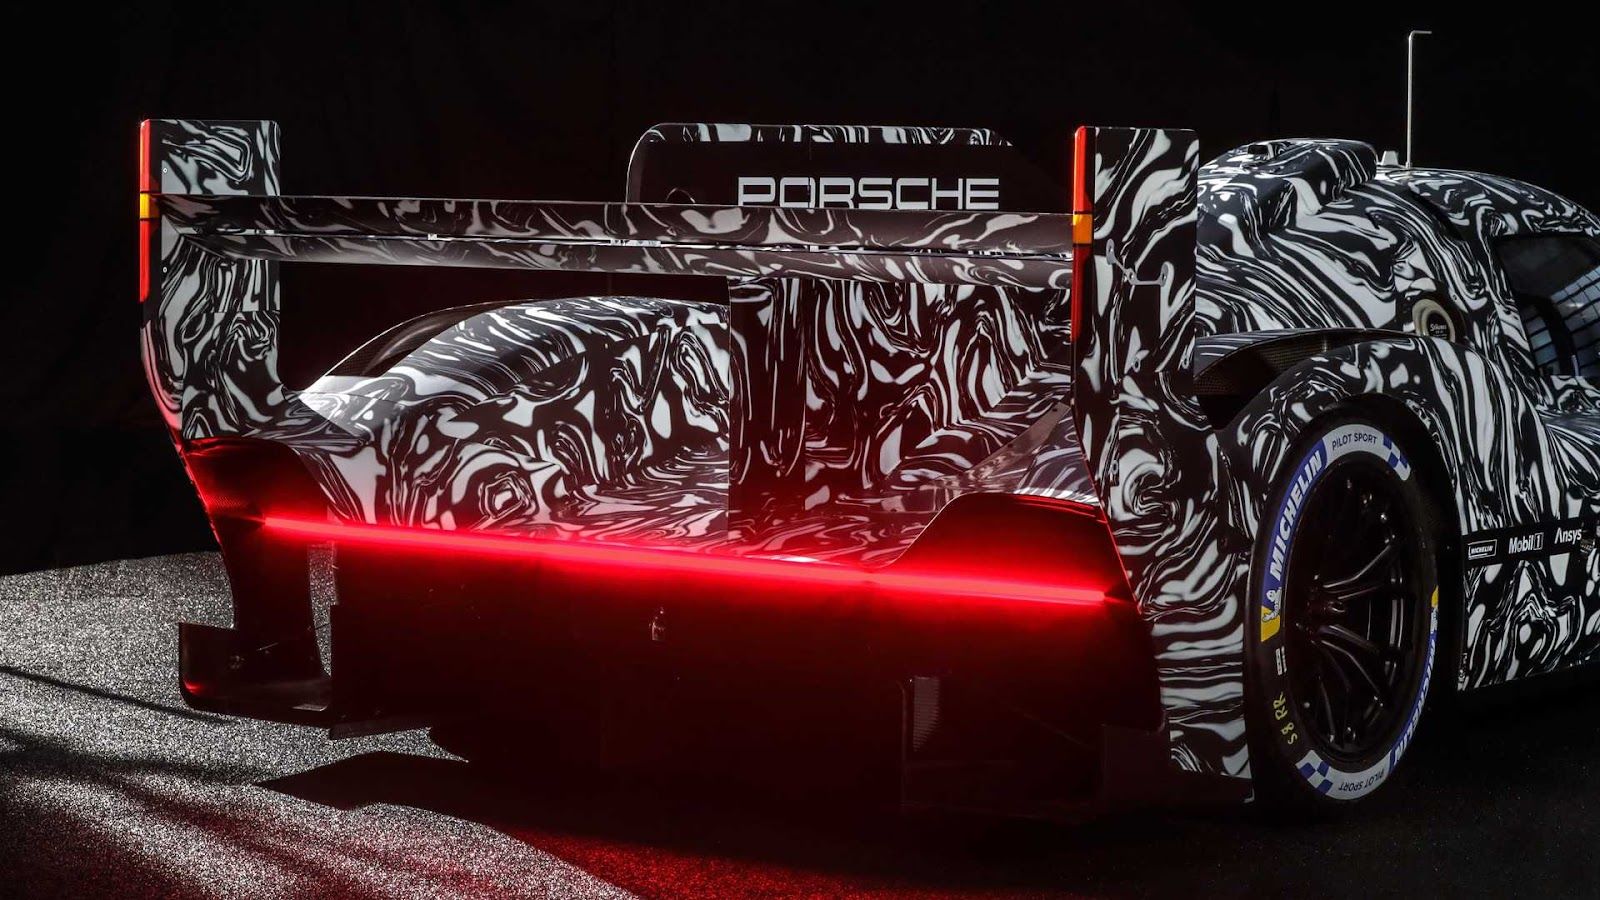 Porsche 釋出了準備重返利曼最高級賽事的全新原型賽車照片